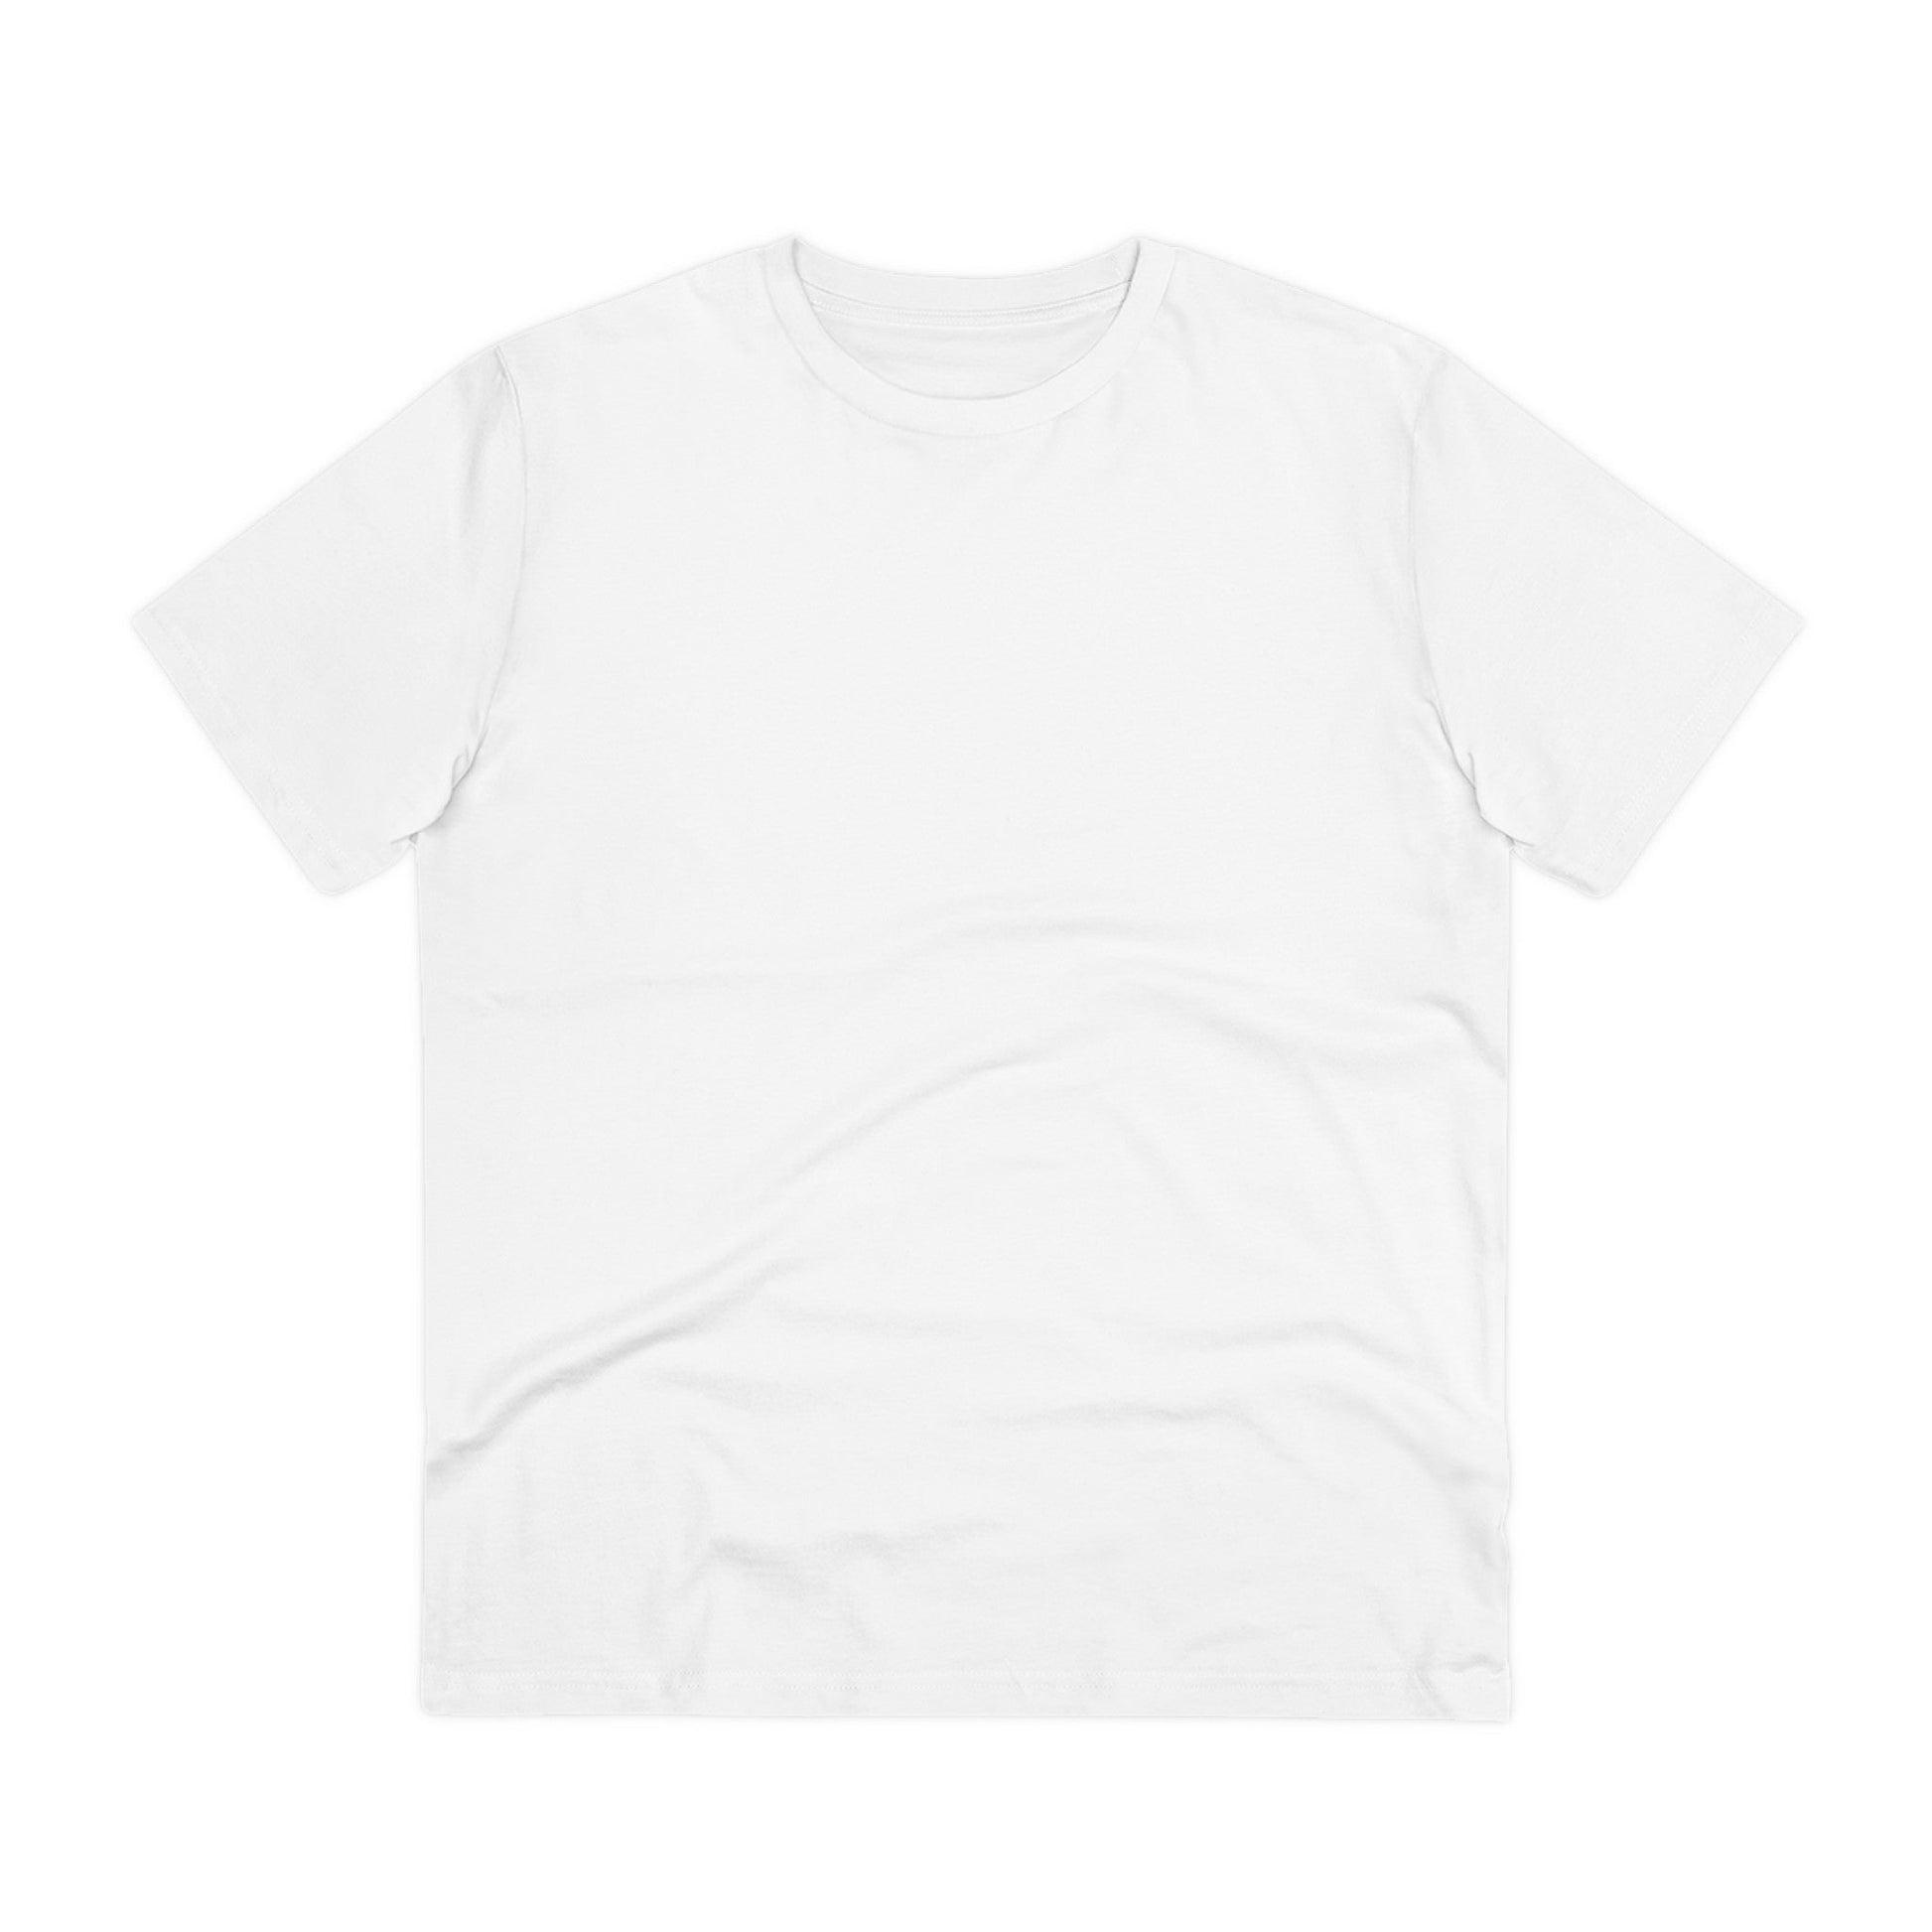 Printify T-Shirt Strawberry cute Unicorn - Unicorn World - Back Design